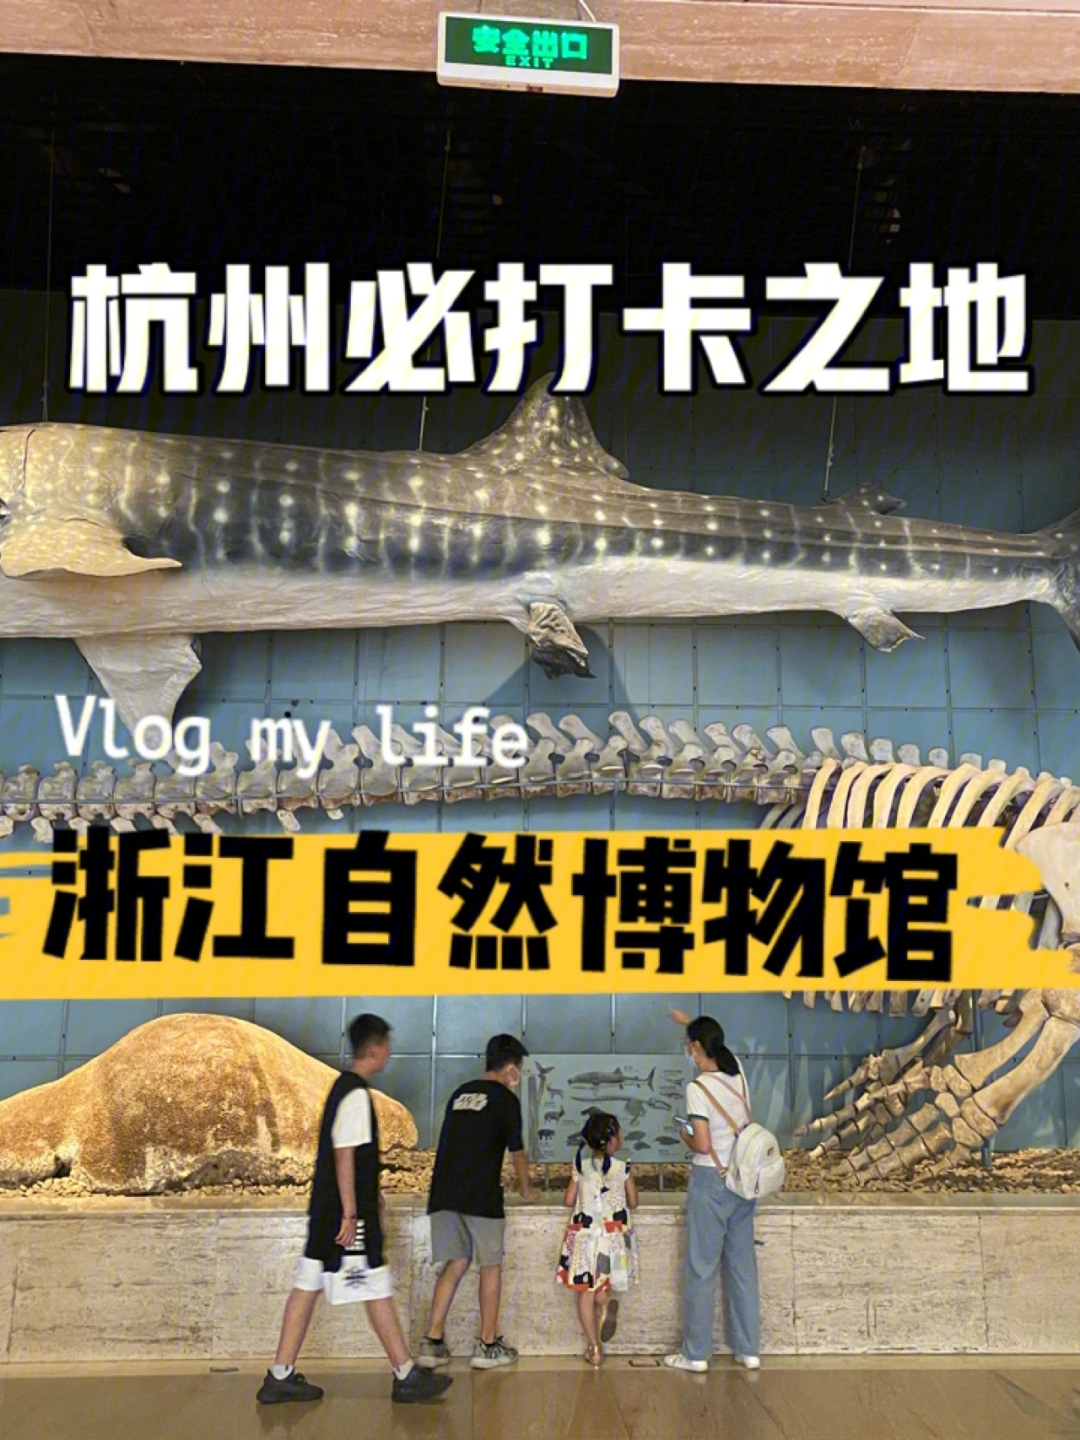 浙江自然博物馆门票图片